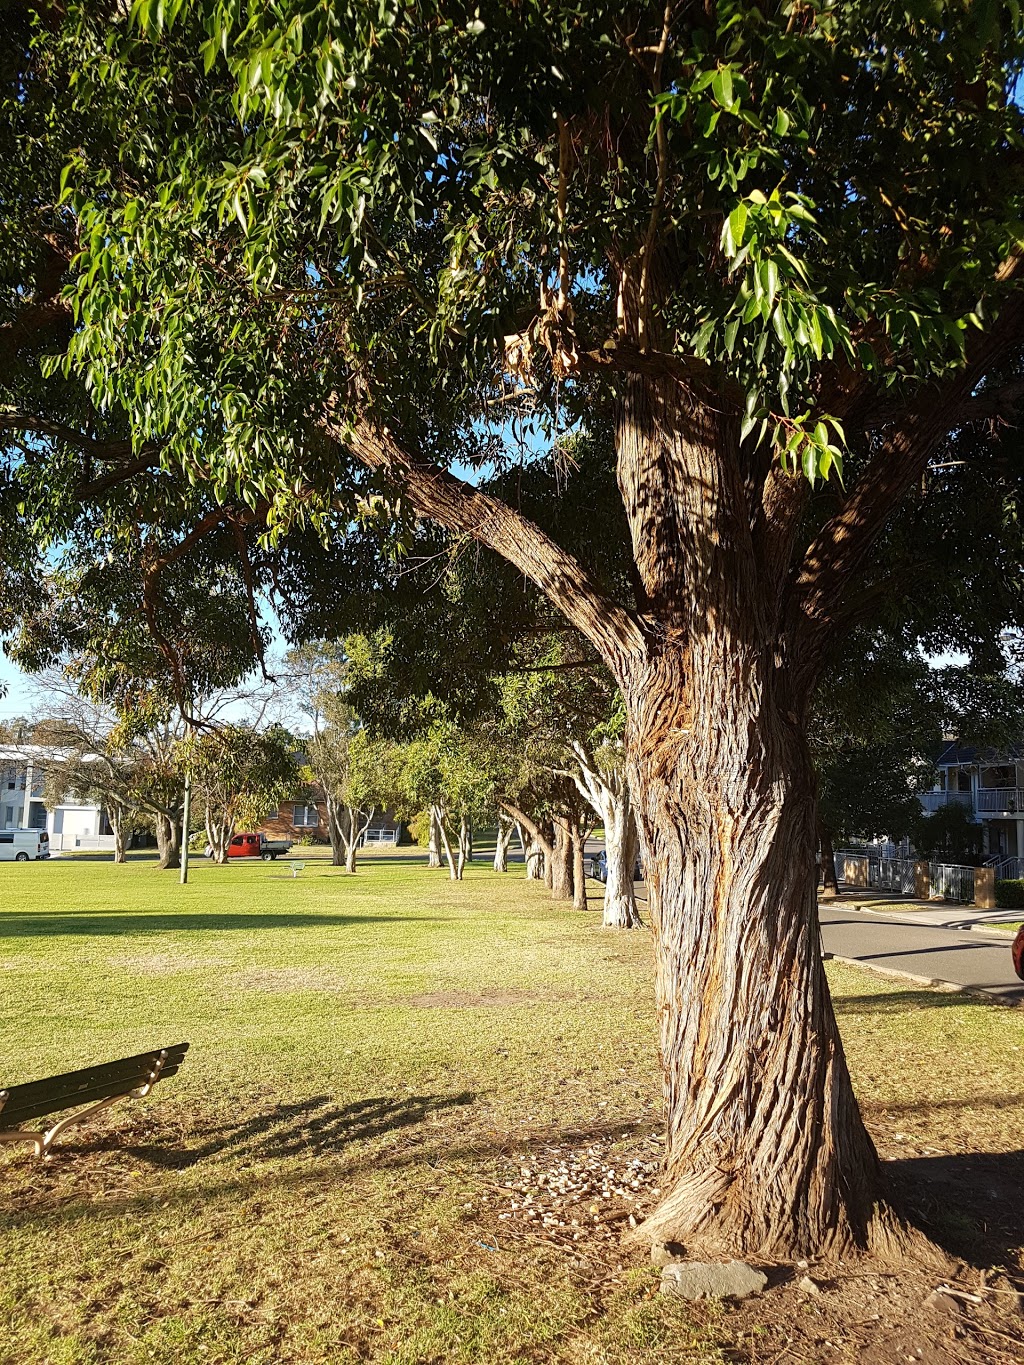 Thorpe Park | park | 31 Low St, Hurstville NSW 2220, Australia